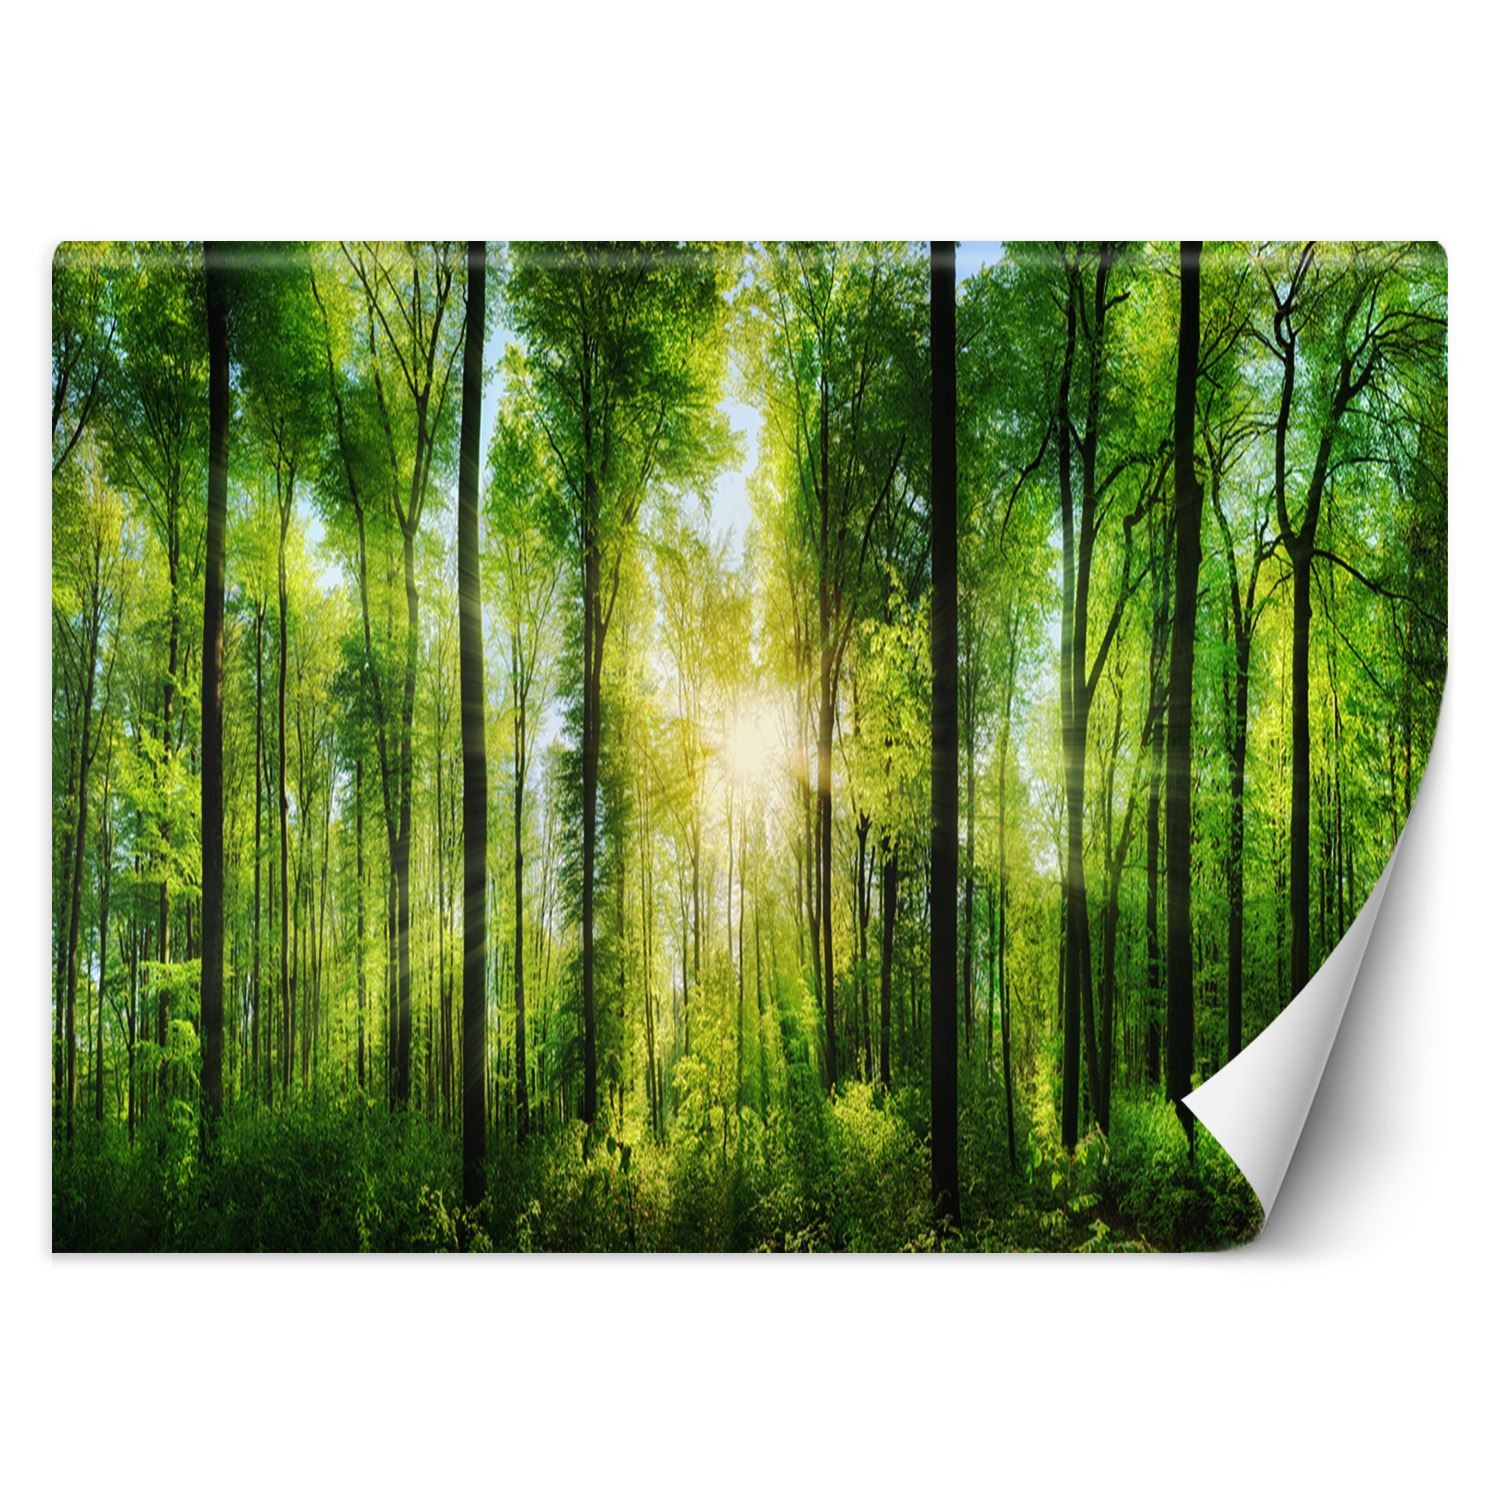 Trend24 – Behang – Zonnestralen In Een Groen Bos – Vliesbehang – Fotobehang Natuur – Behang Woonkamer – 450x315x2 cm – Incl. behanglijm